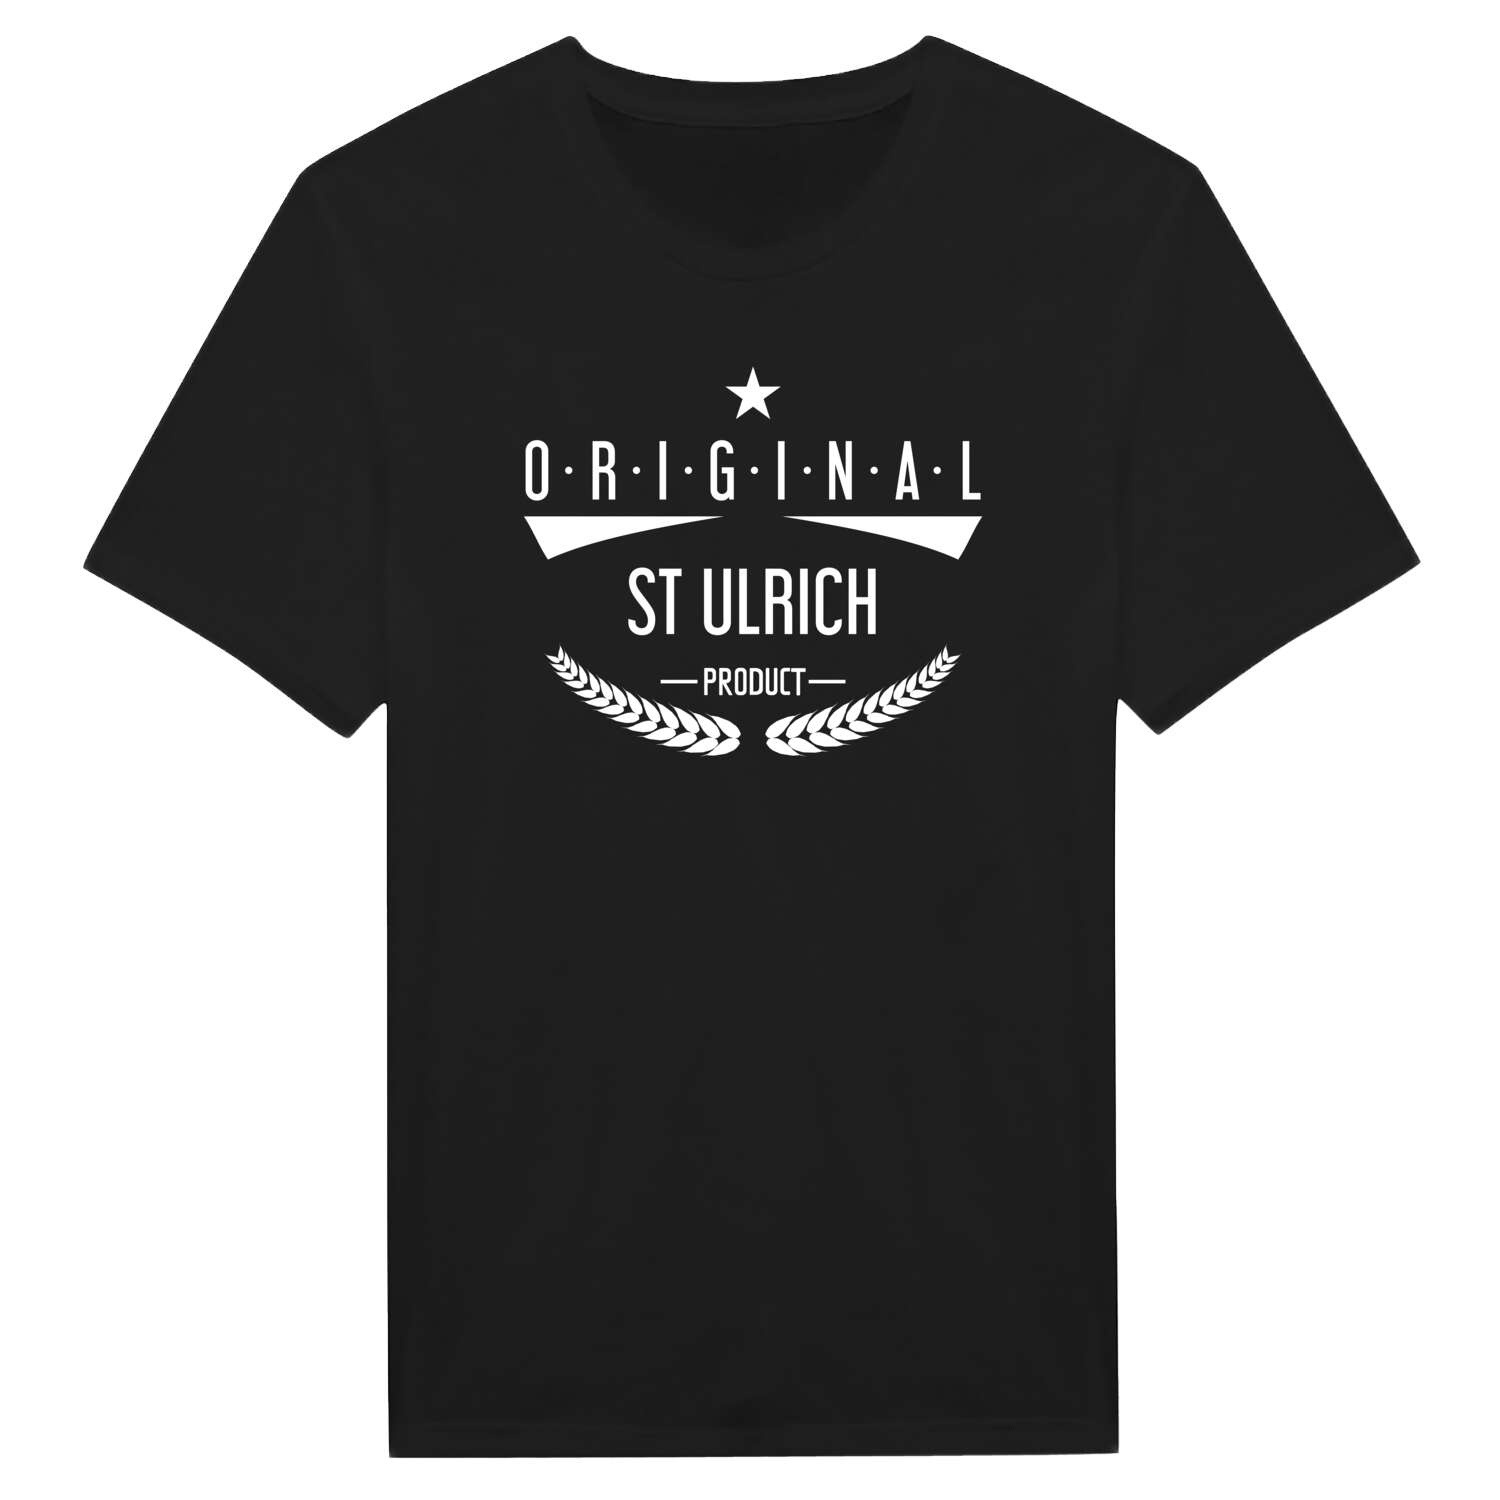 St Ulrich T-Shirt »Original Product«